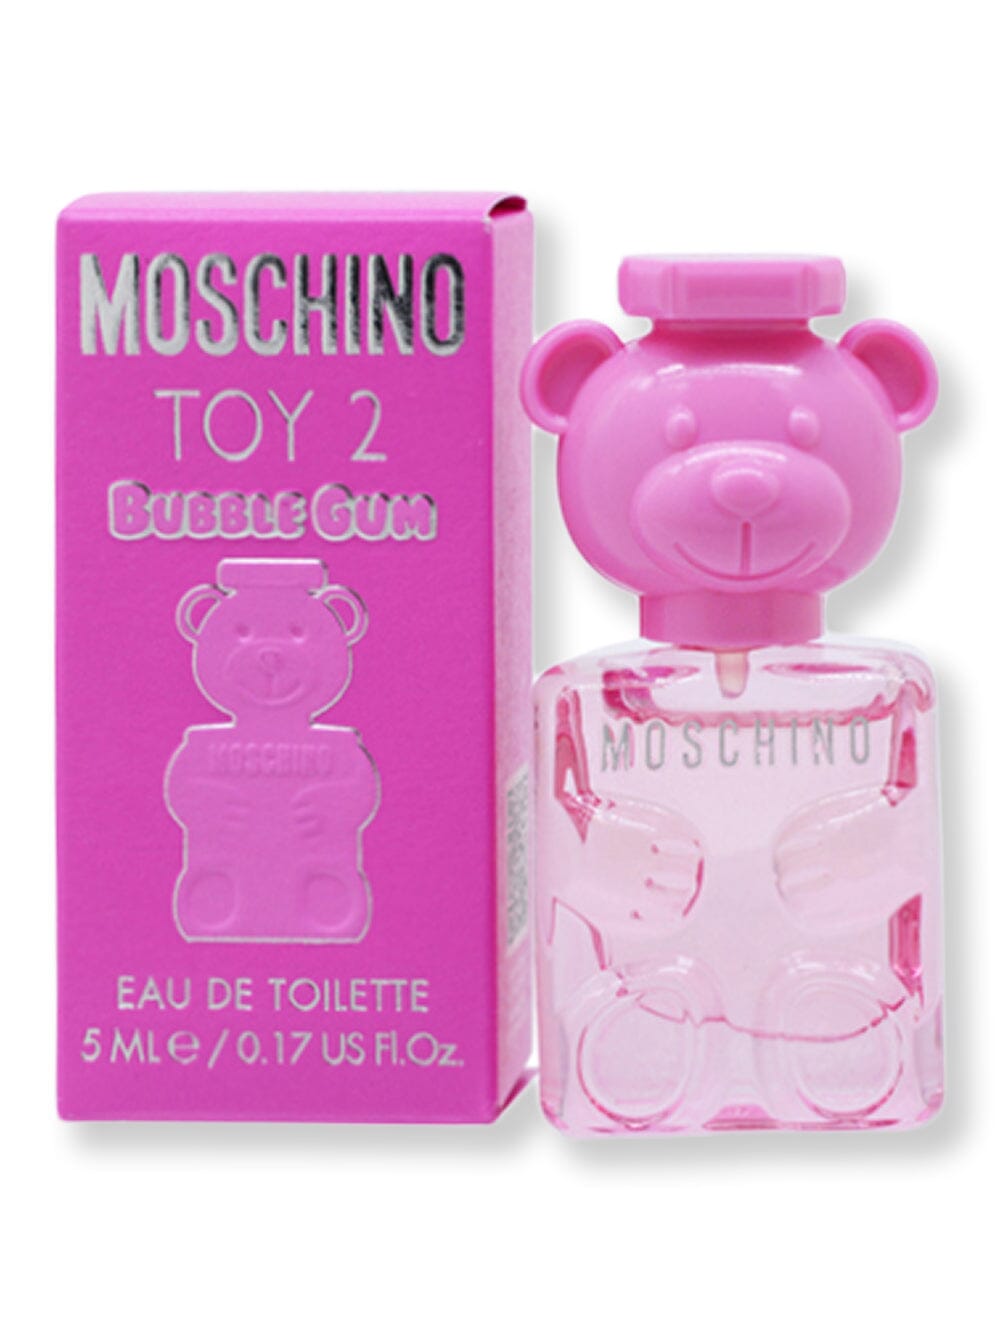 Moschino Moschino Toy 2 Bubble Gum EDT Splash 0.17 oz5 ml Perfume 